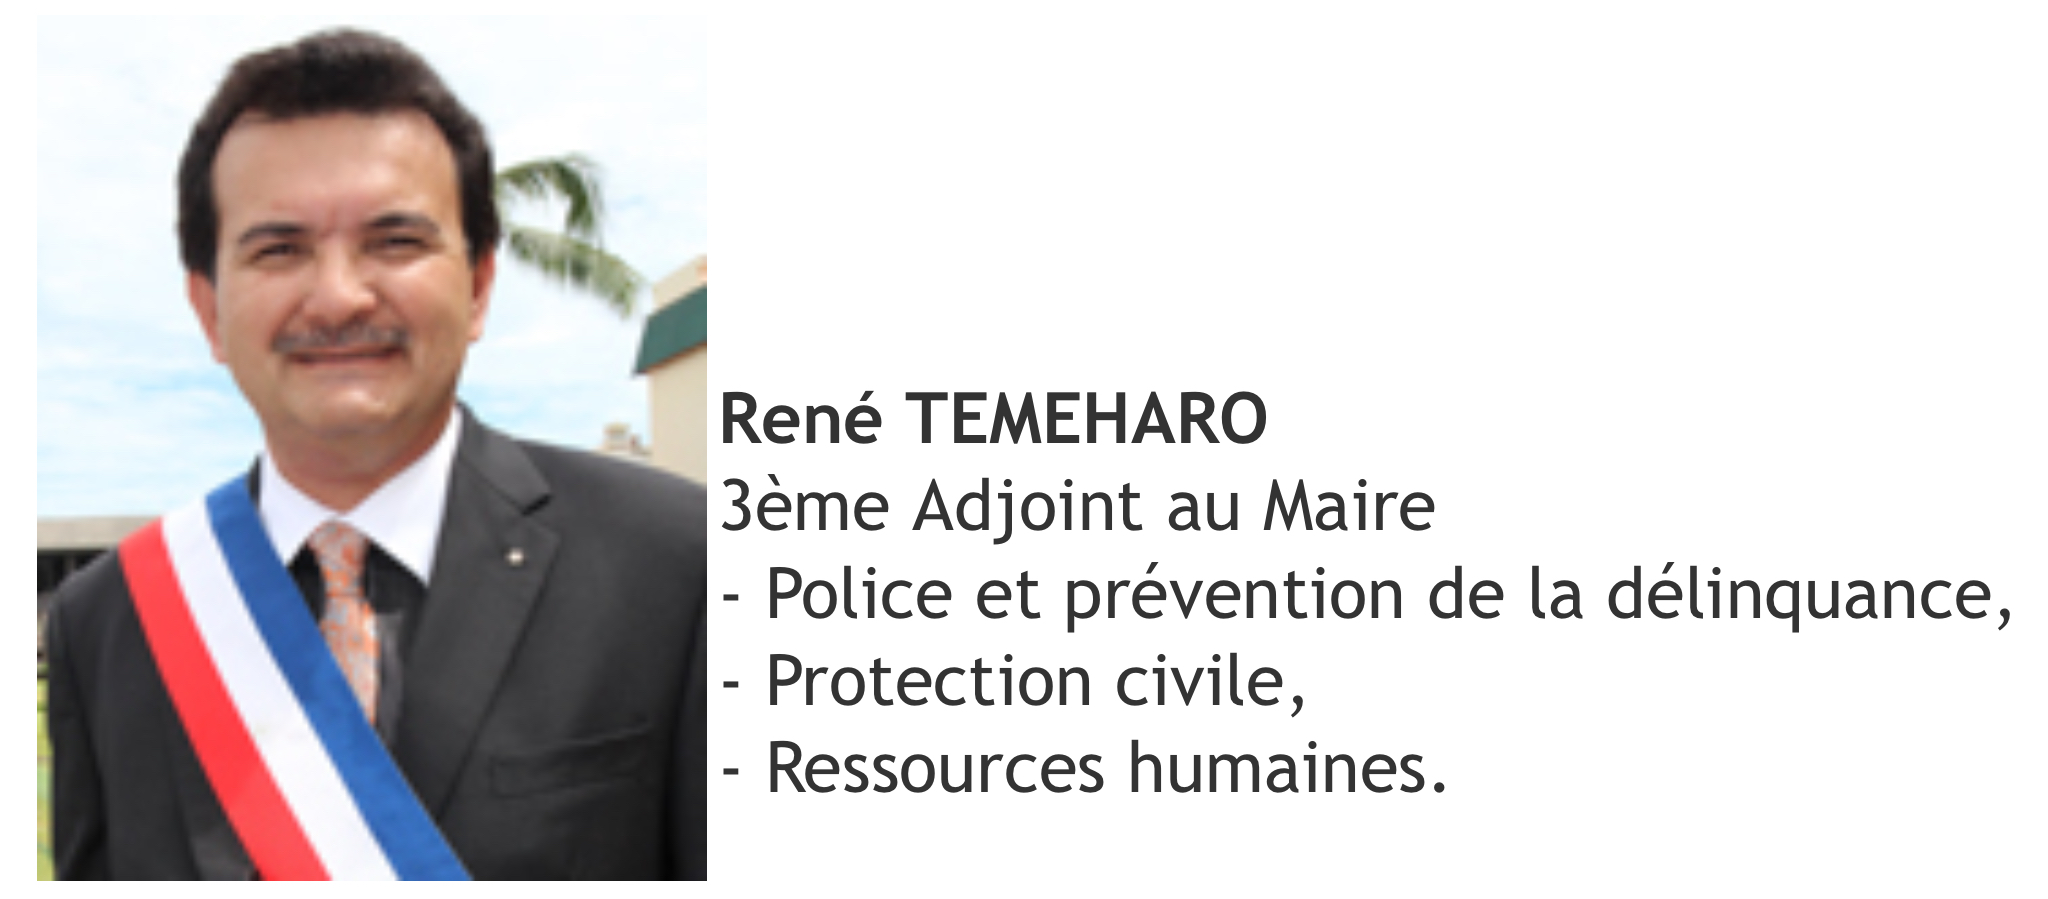 René Temeharo, adjoint aux ressources humaines - site officiel de la ville de Papeete.